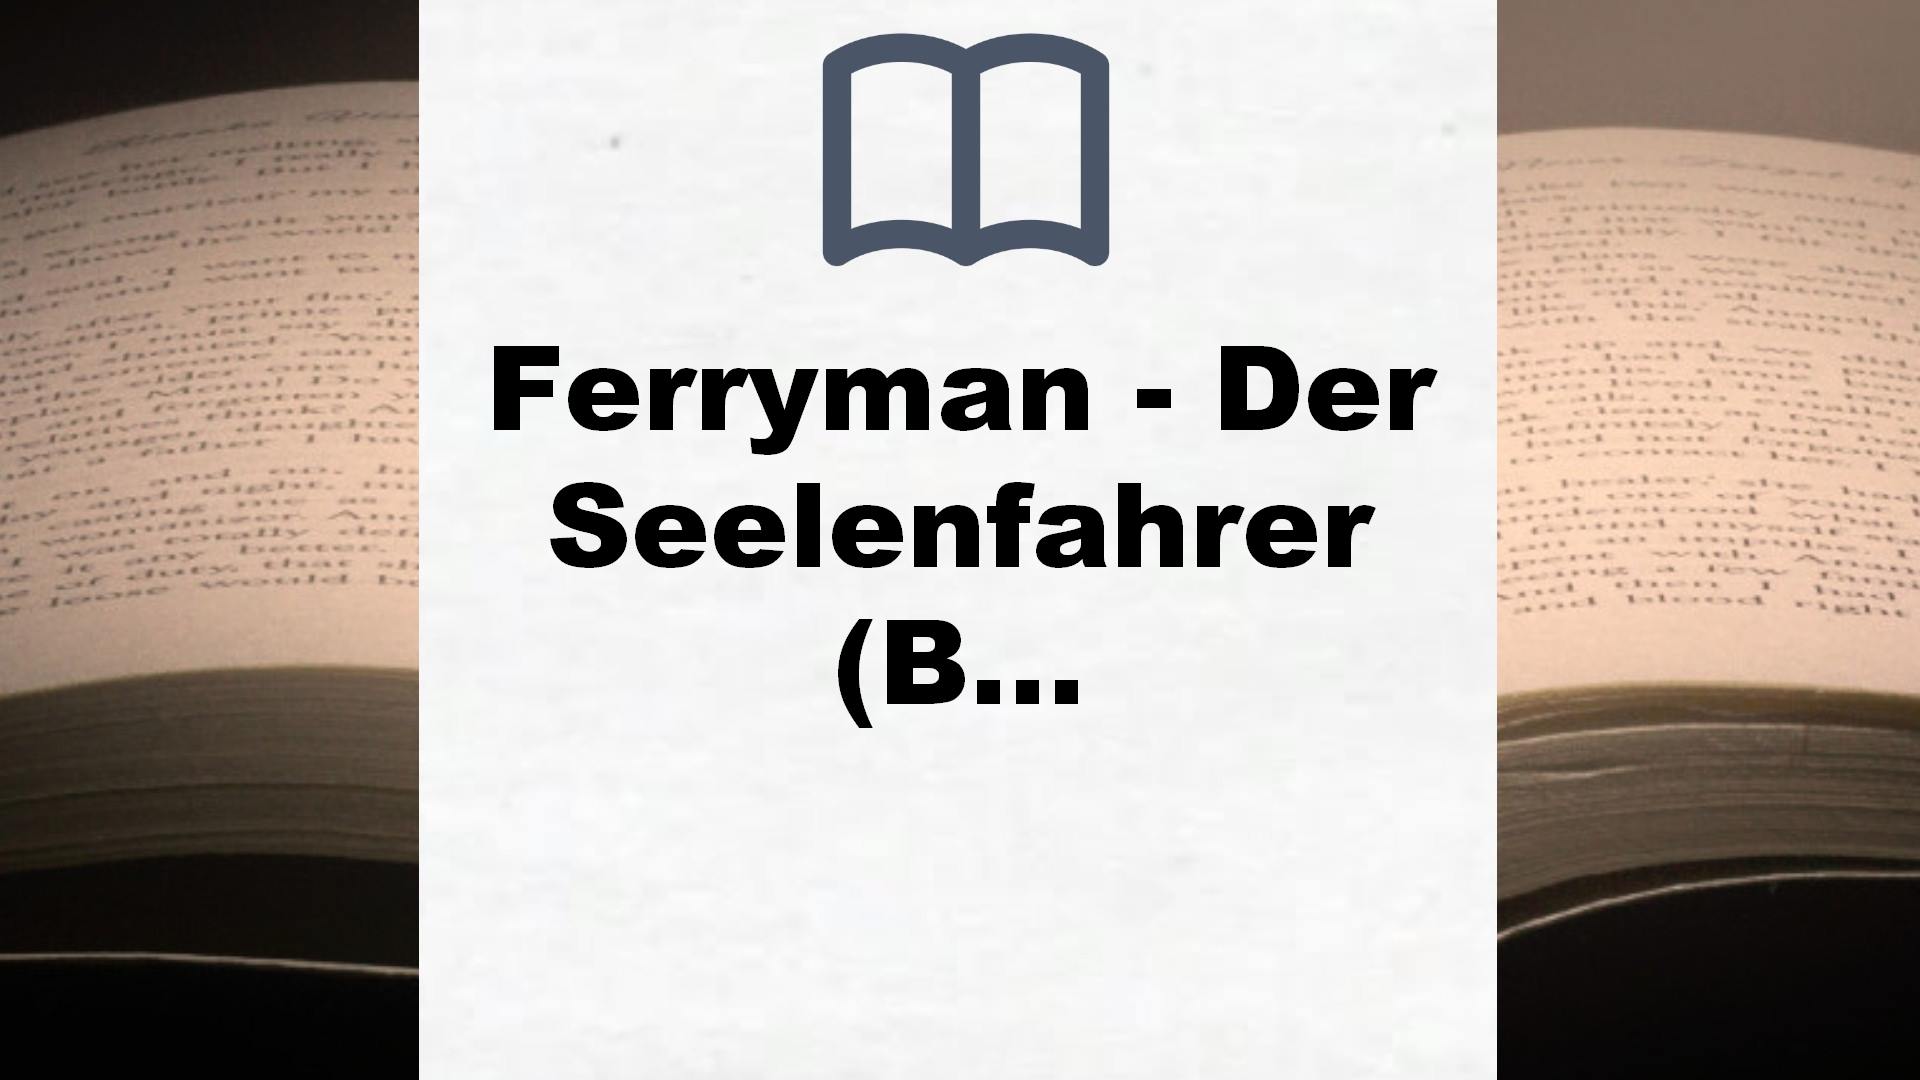 Ferryman – Der Seelenfahrer (Bd. 1) – Buchrezension